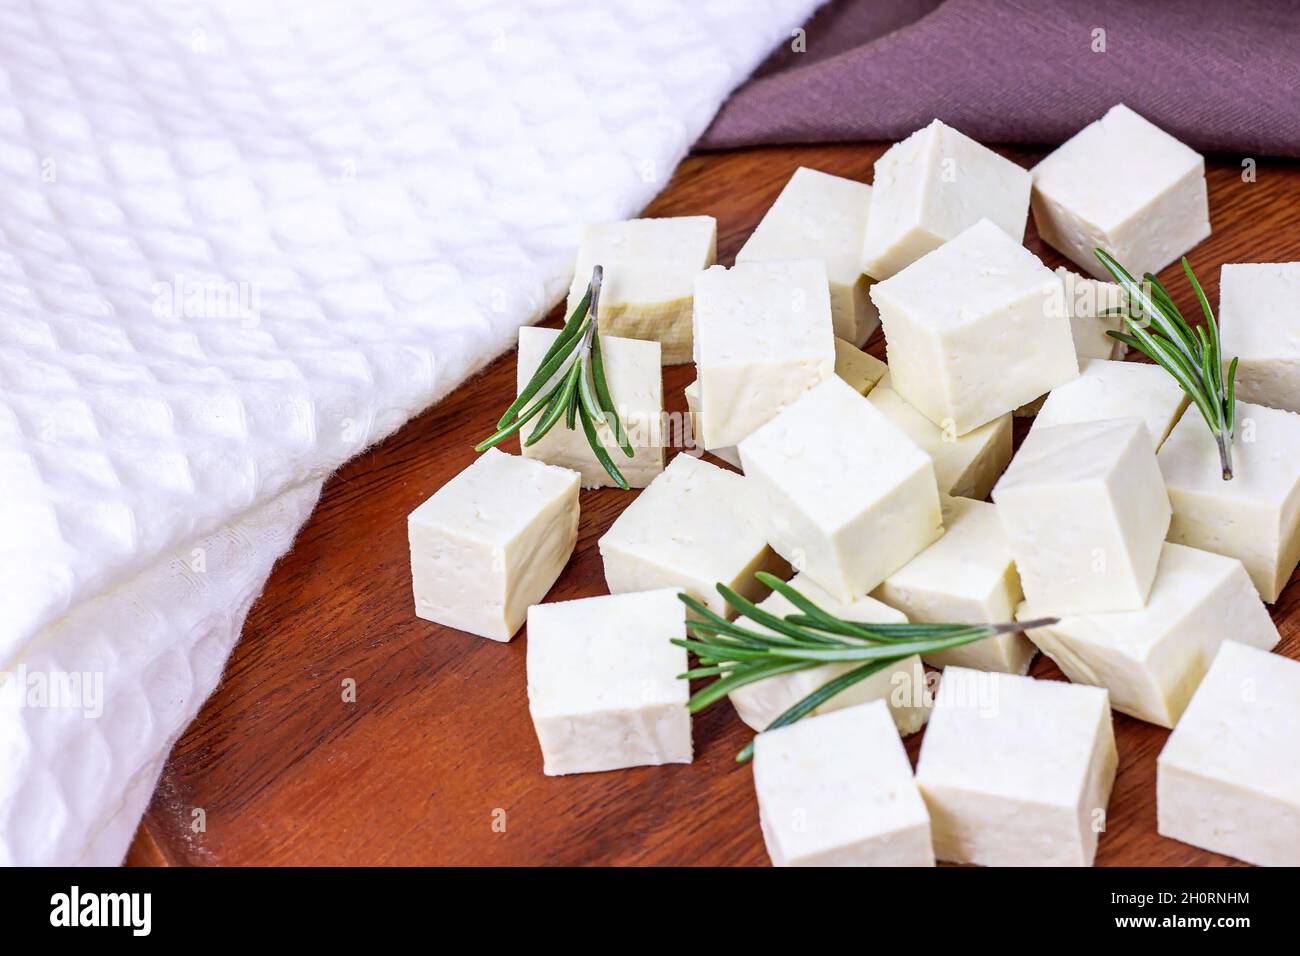 Cubetti di tofu vegetariani biologici crudi con rosmarino fresco su sfondo di legno. Foto Stock